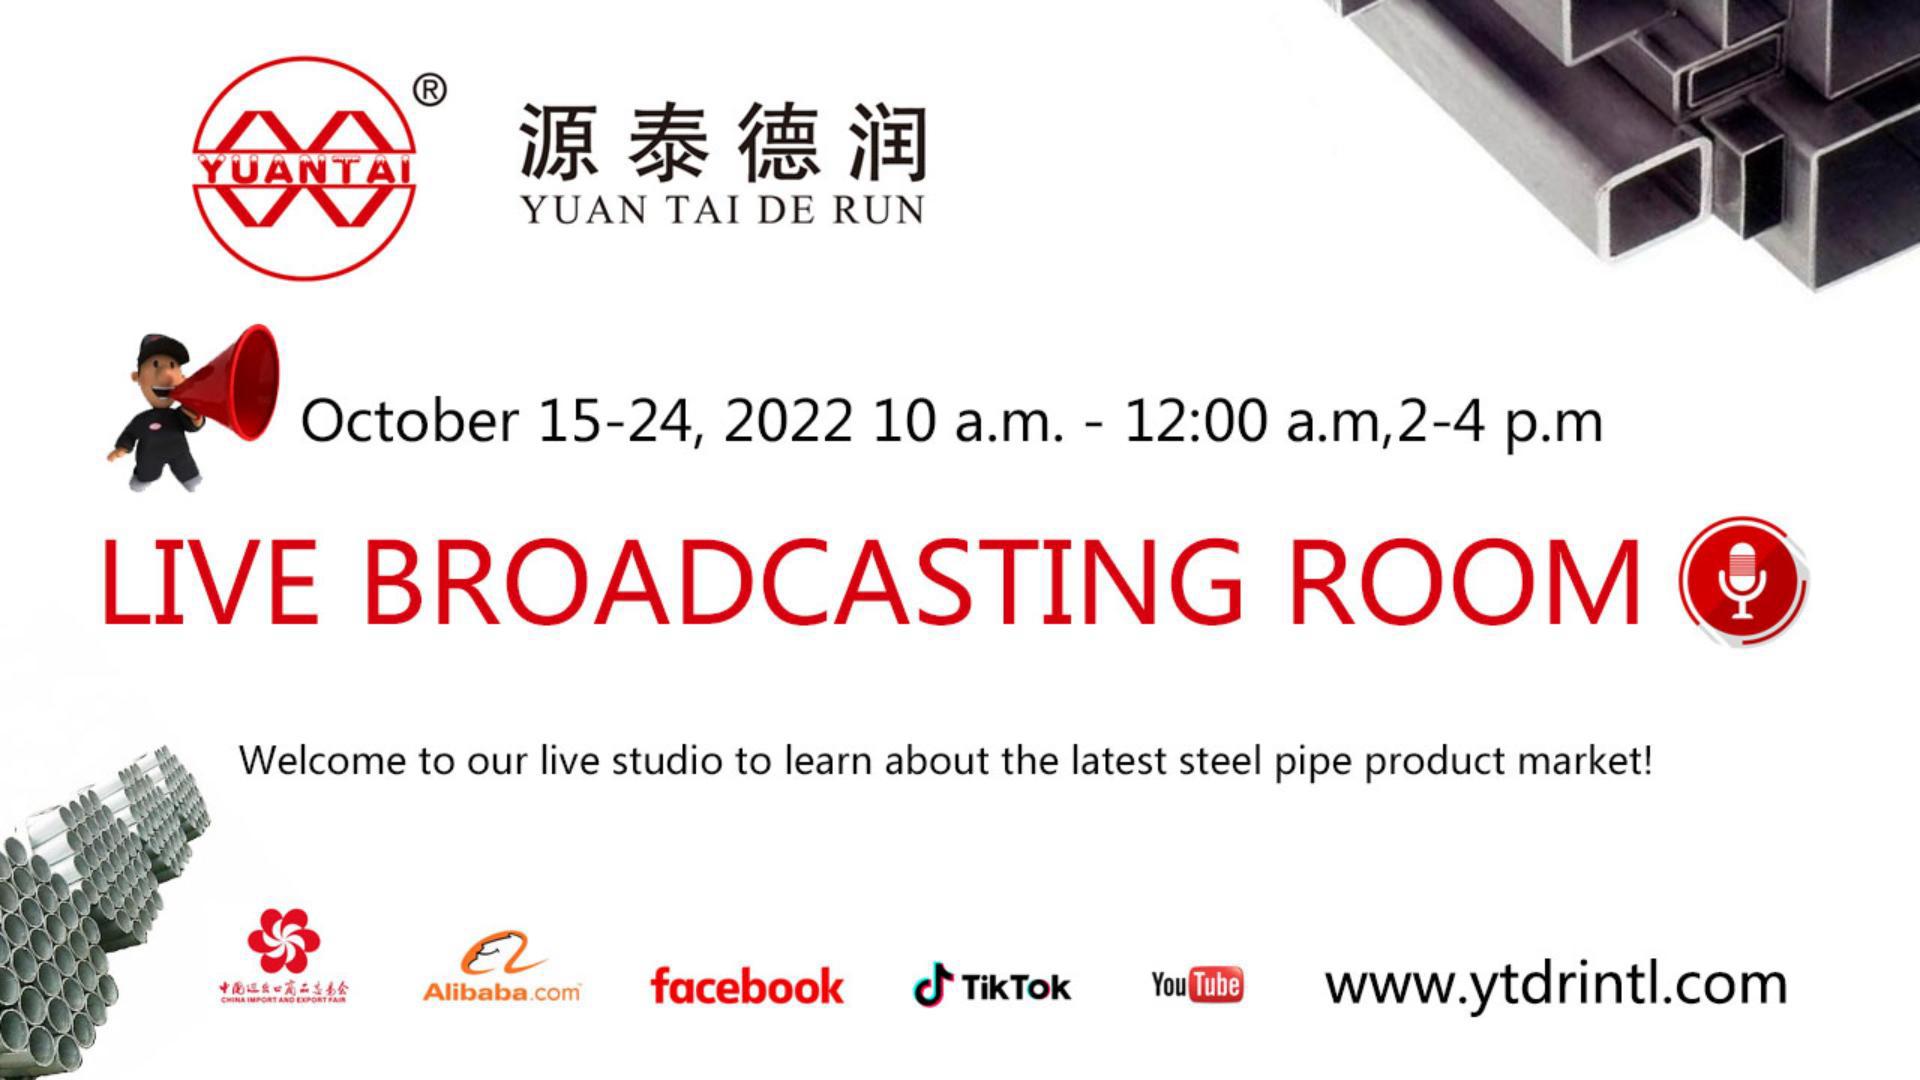 Beachten!Beachten!Die Tianjin Yuantai Derun Steel Pipe Manufacturing Group wird vom 15. bis 24. Oktober 2022 an der 132. Canton Fair teilnehmen.